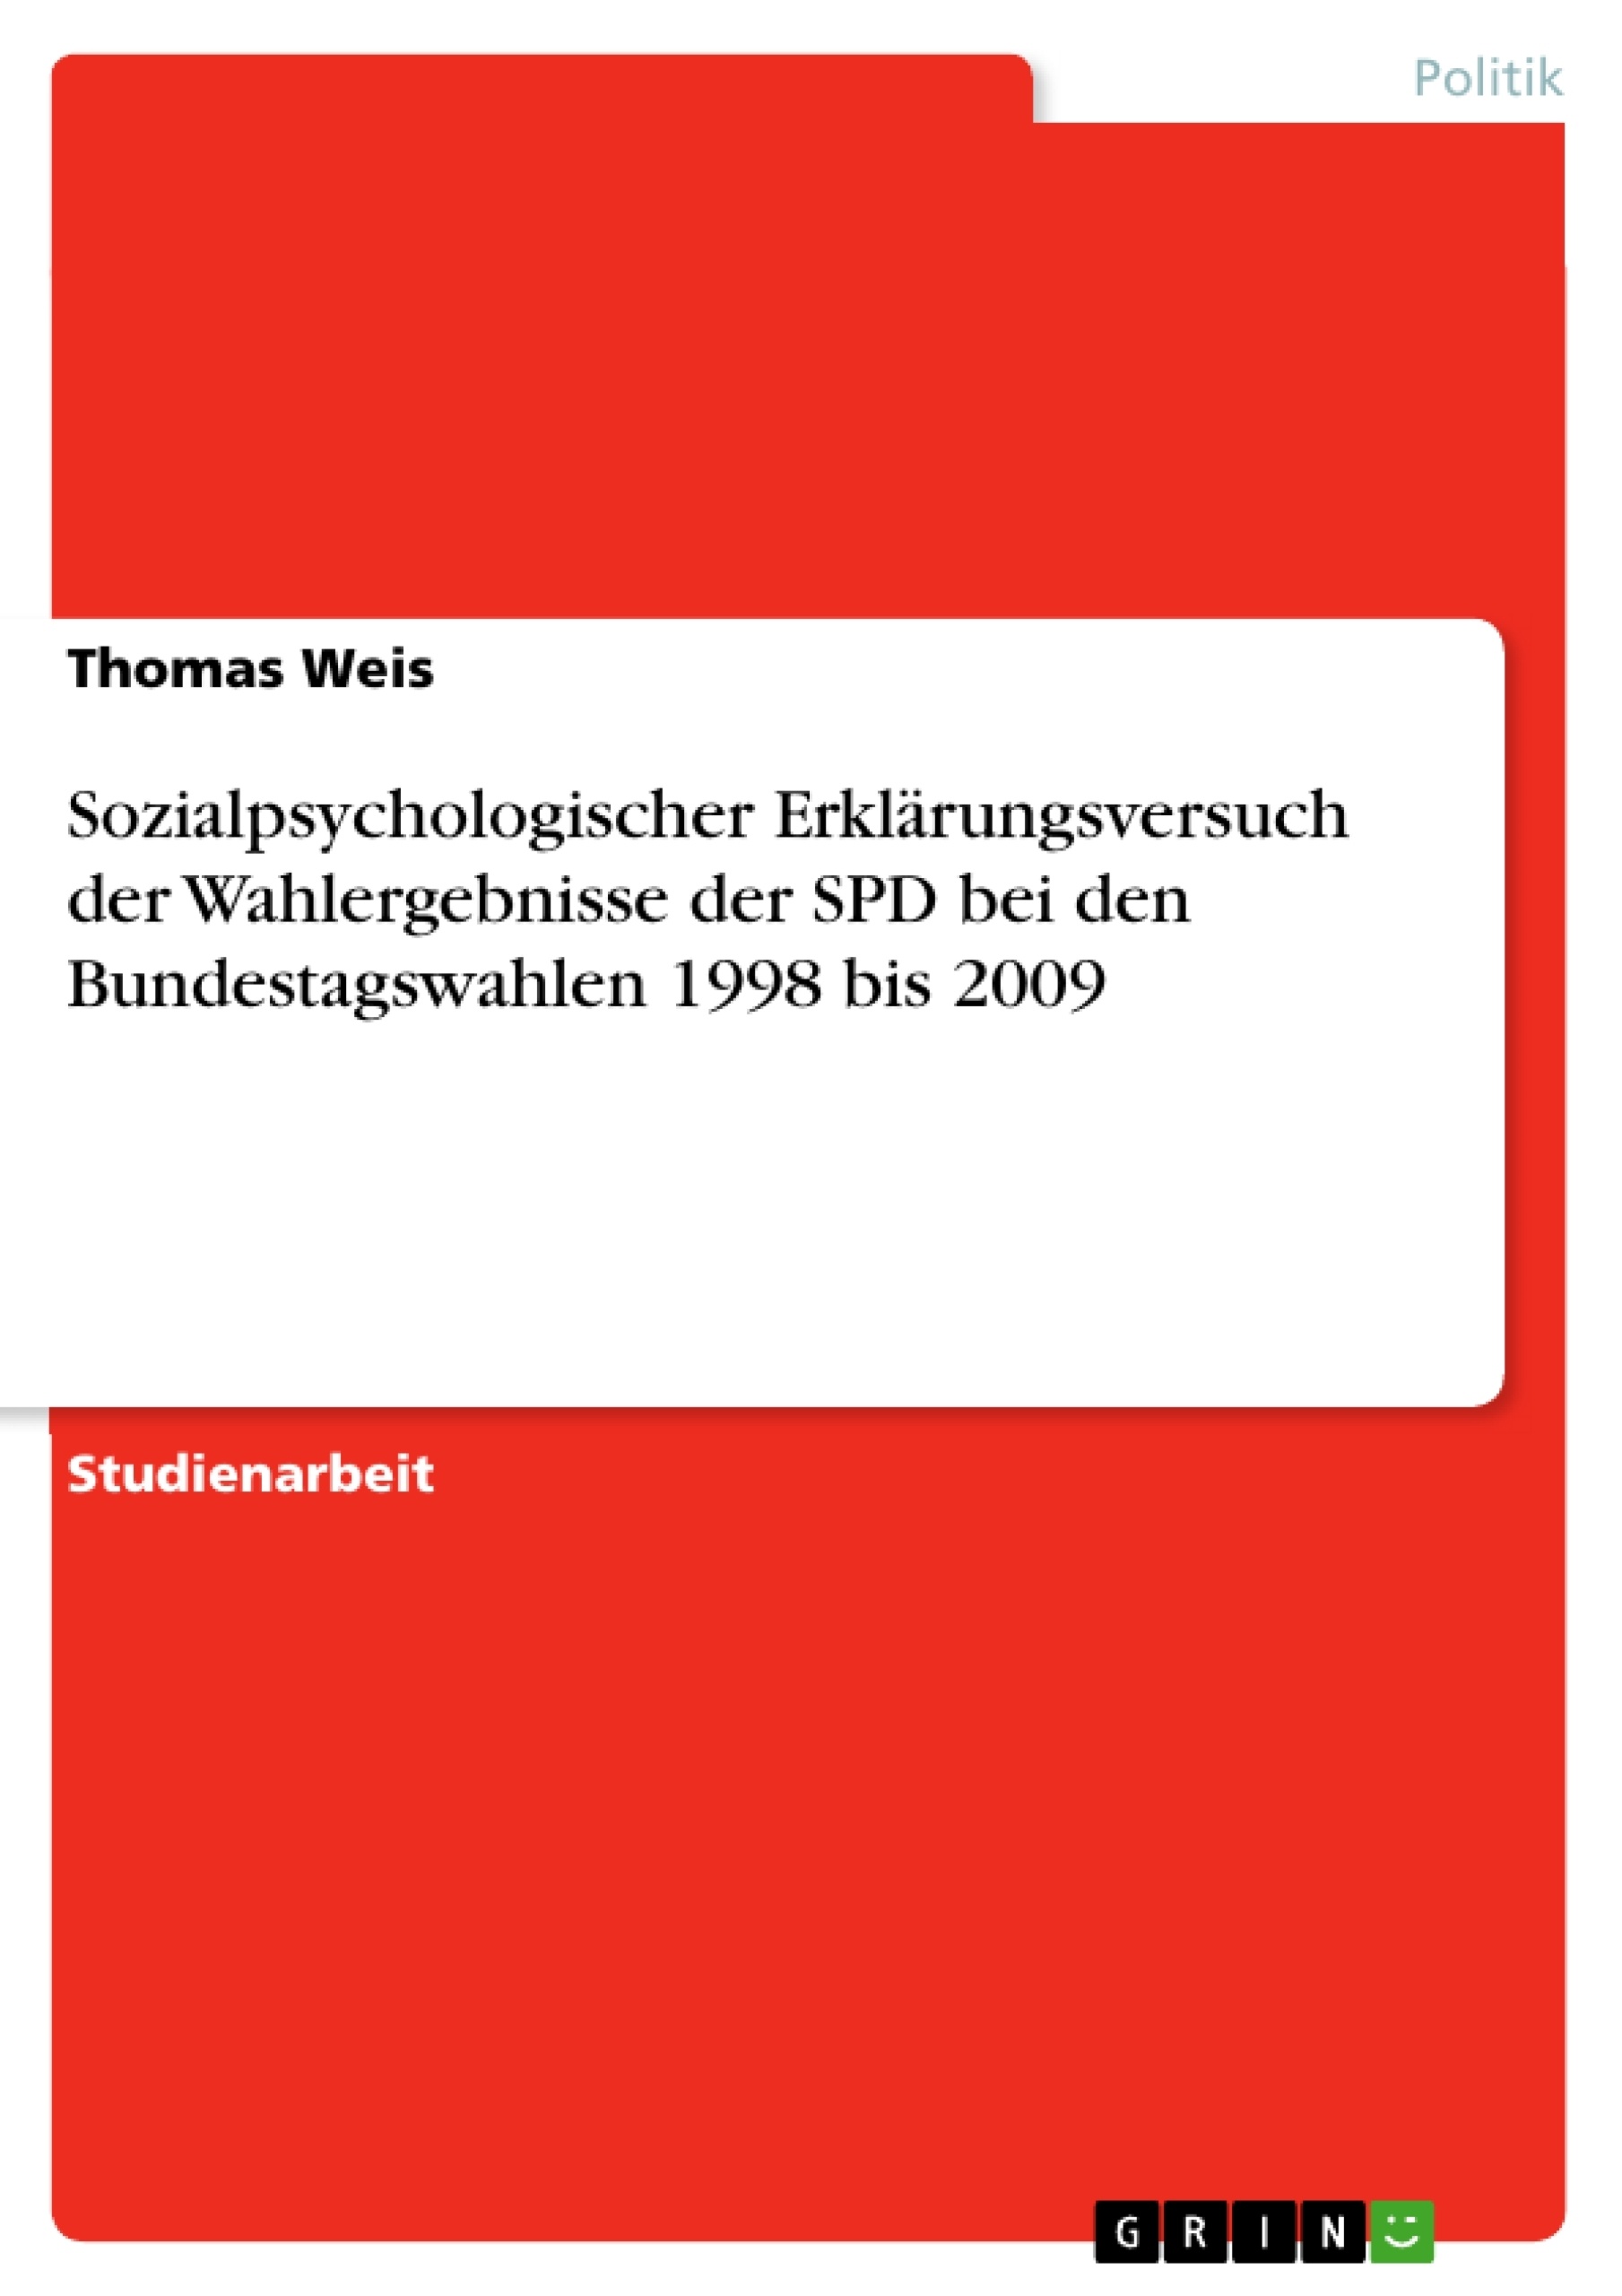 Title: Sozialpsychologischer Erklärungsversuch der Wahlergebnisse der SPD bei den Bundestagswahlen 1998 bis 2009